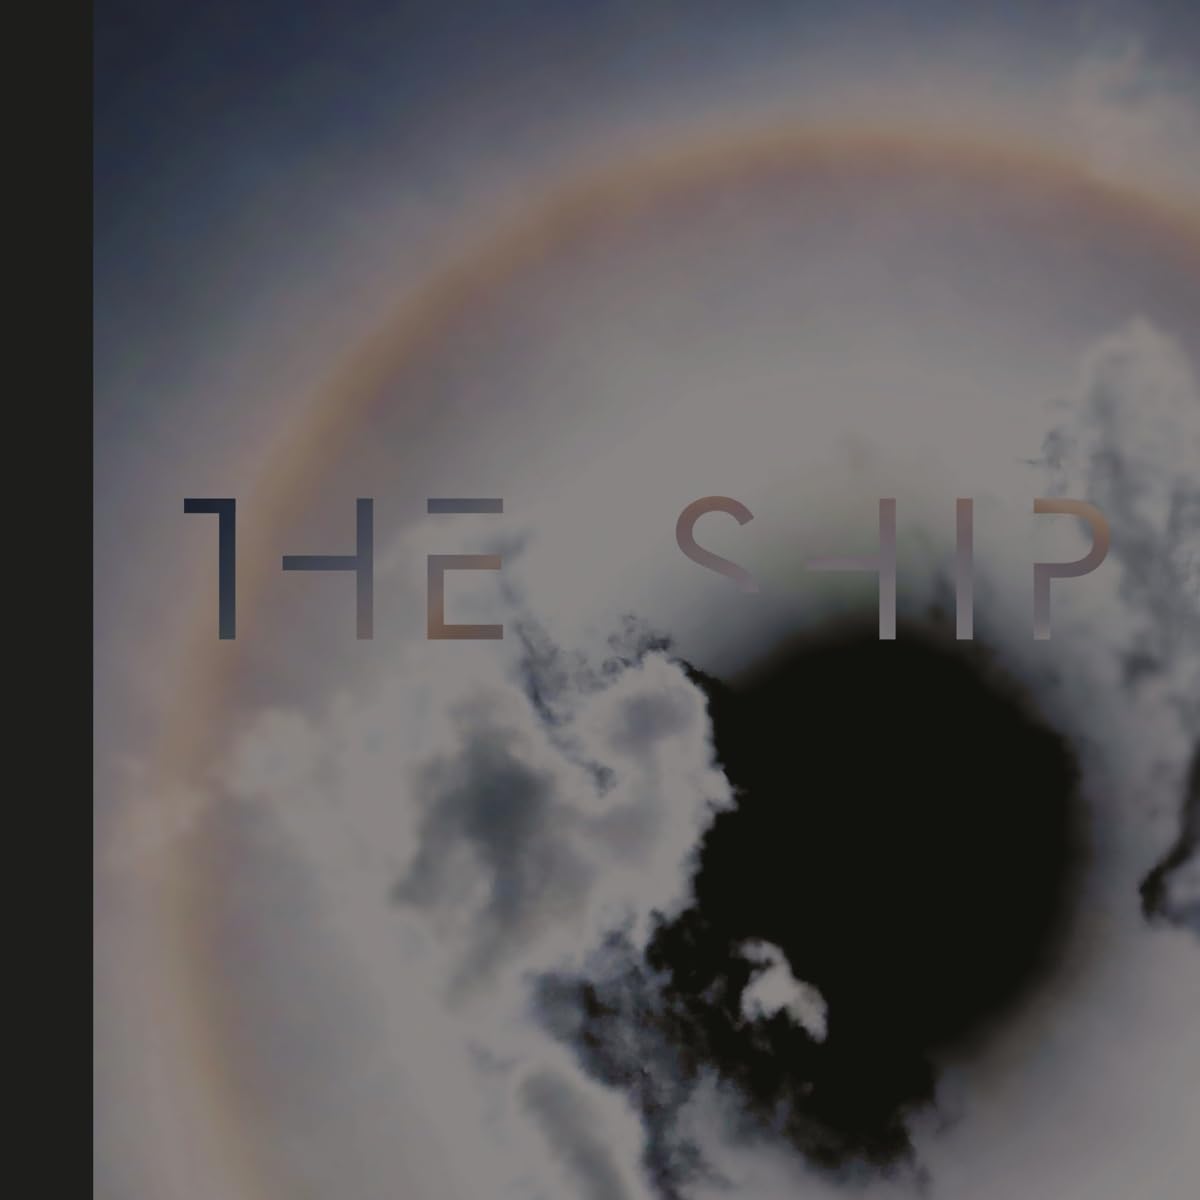 Vinile Brian Eno - The Ship Coloured NUOVO SIGILLATO EDIZIONE DEL SUBITO DISPONIBILE